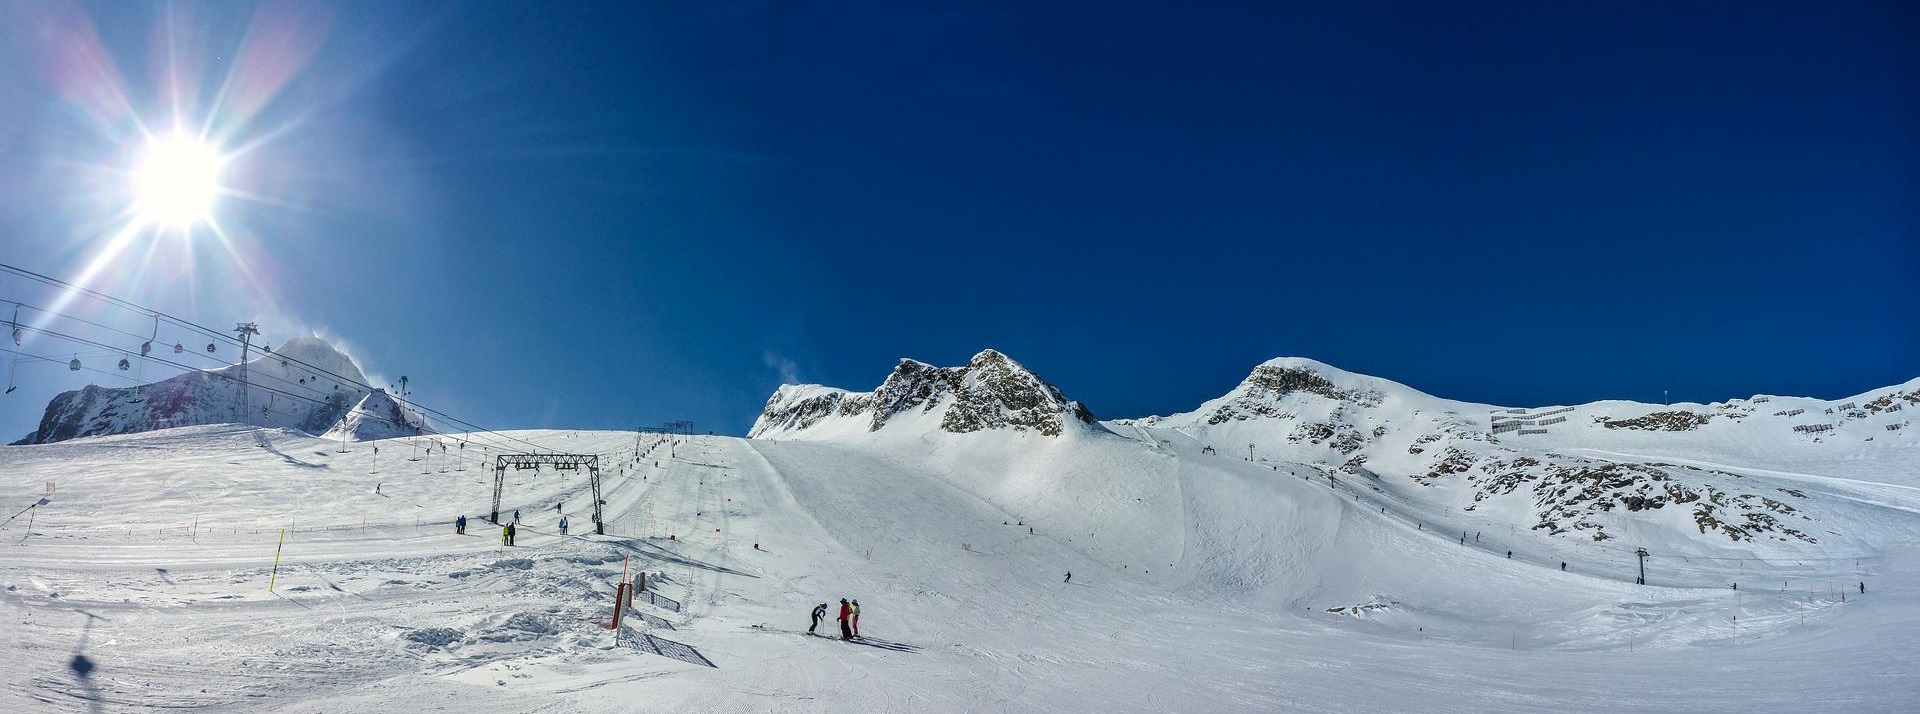 oboz narciarski austria